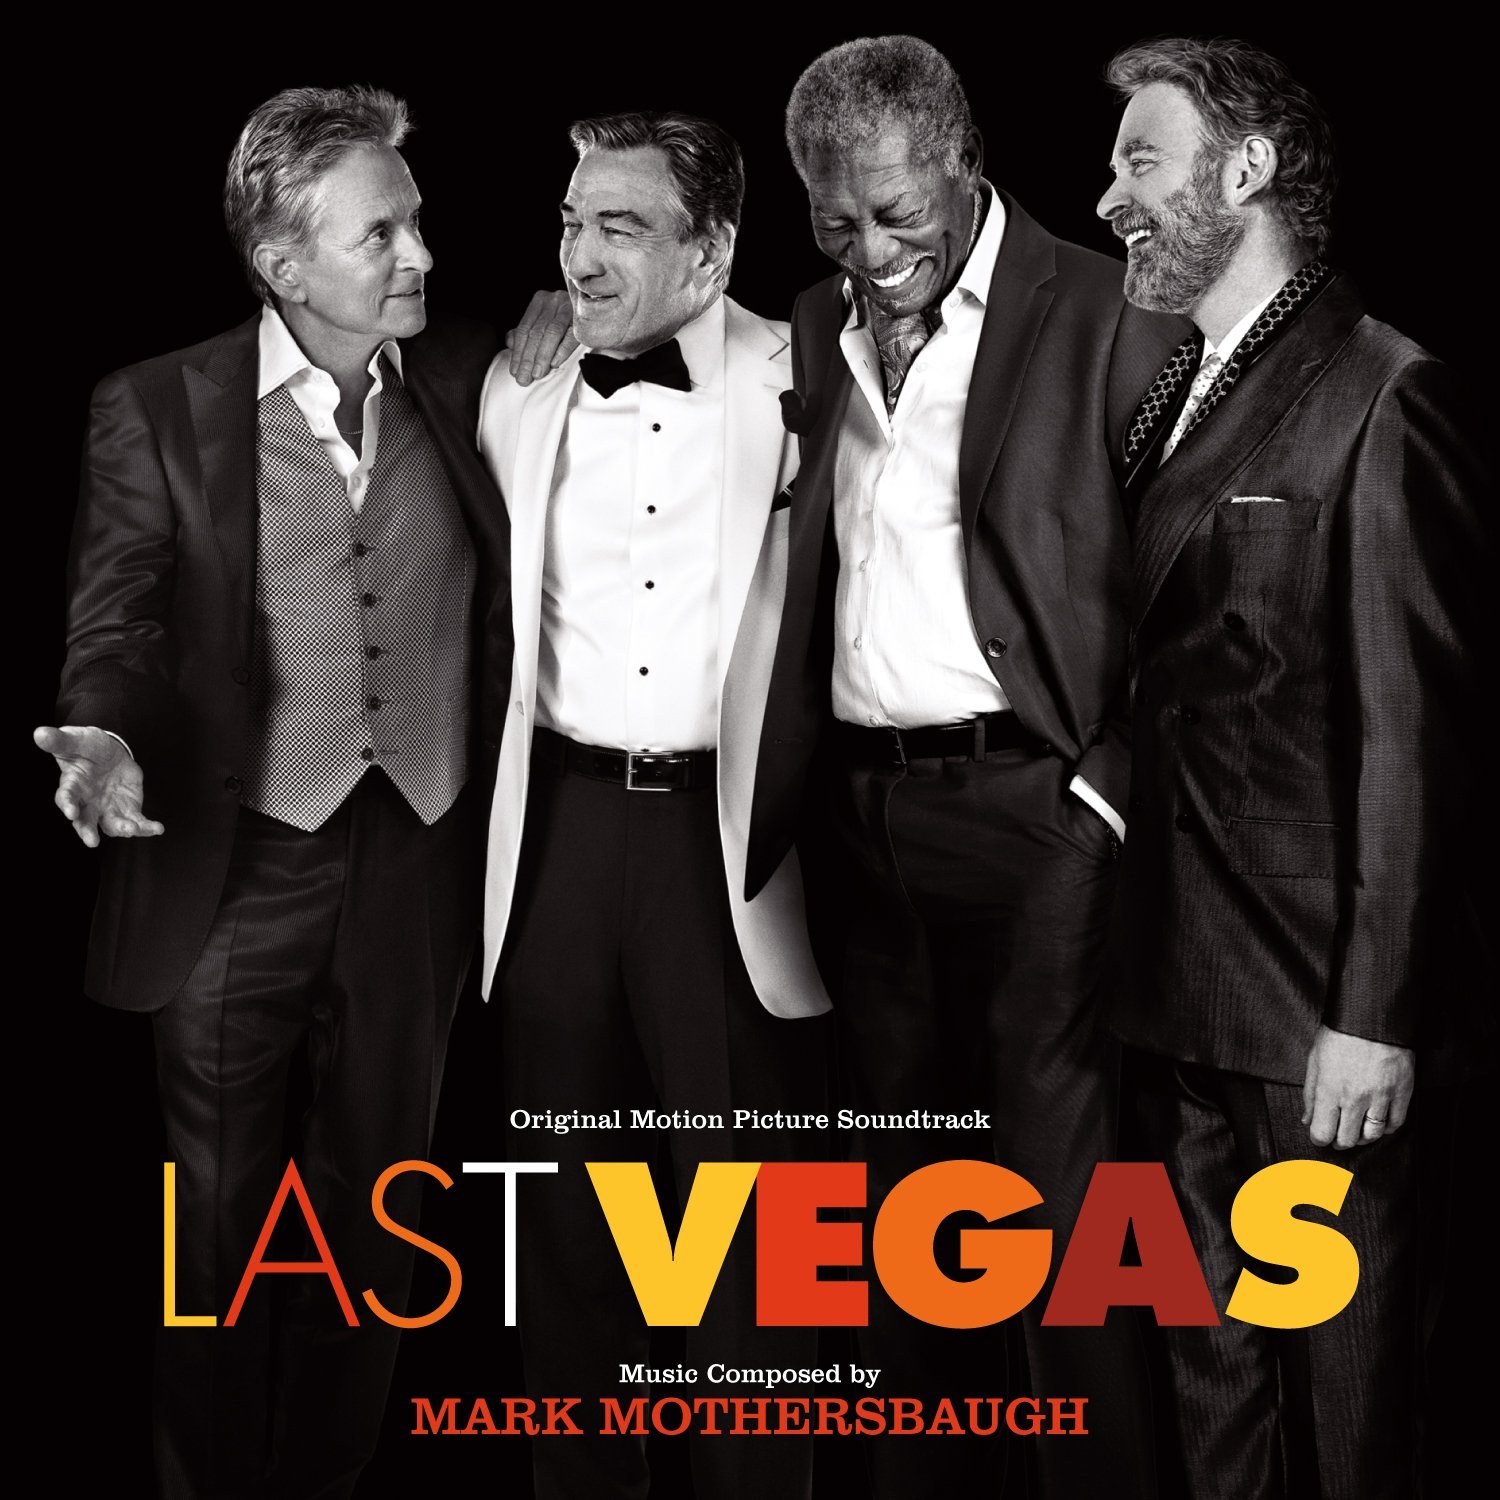 Last Vegas Film